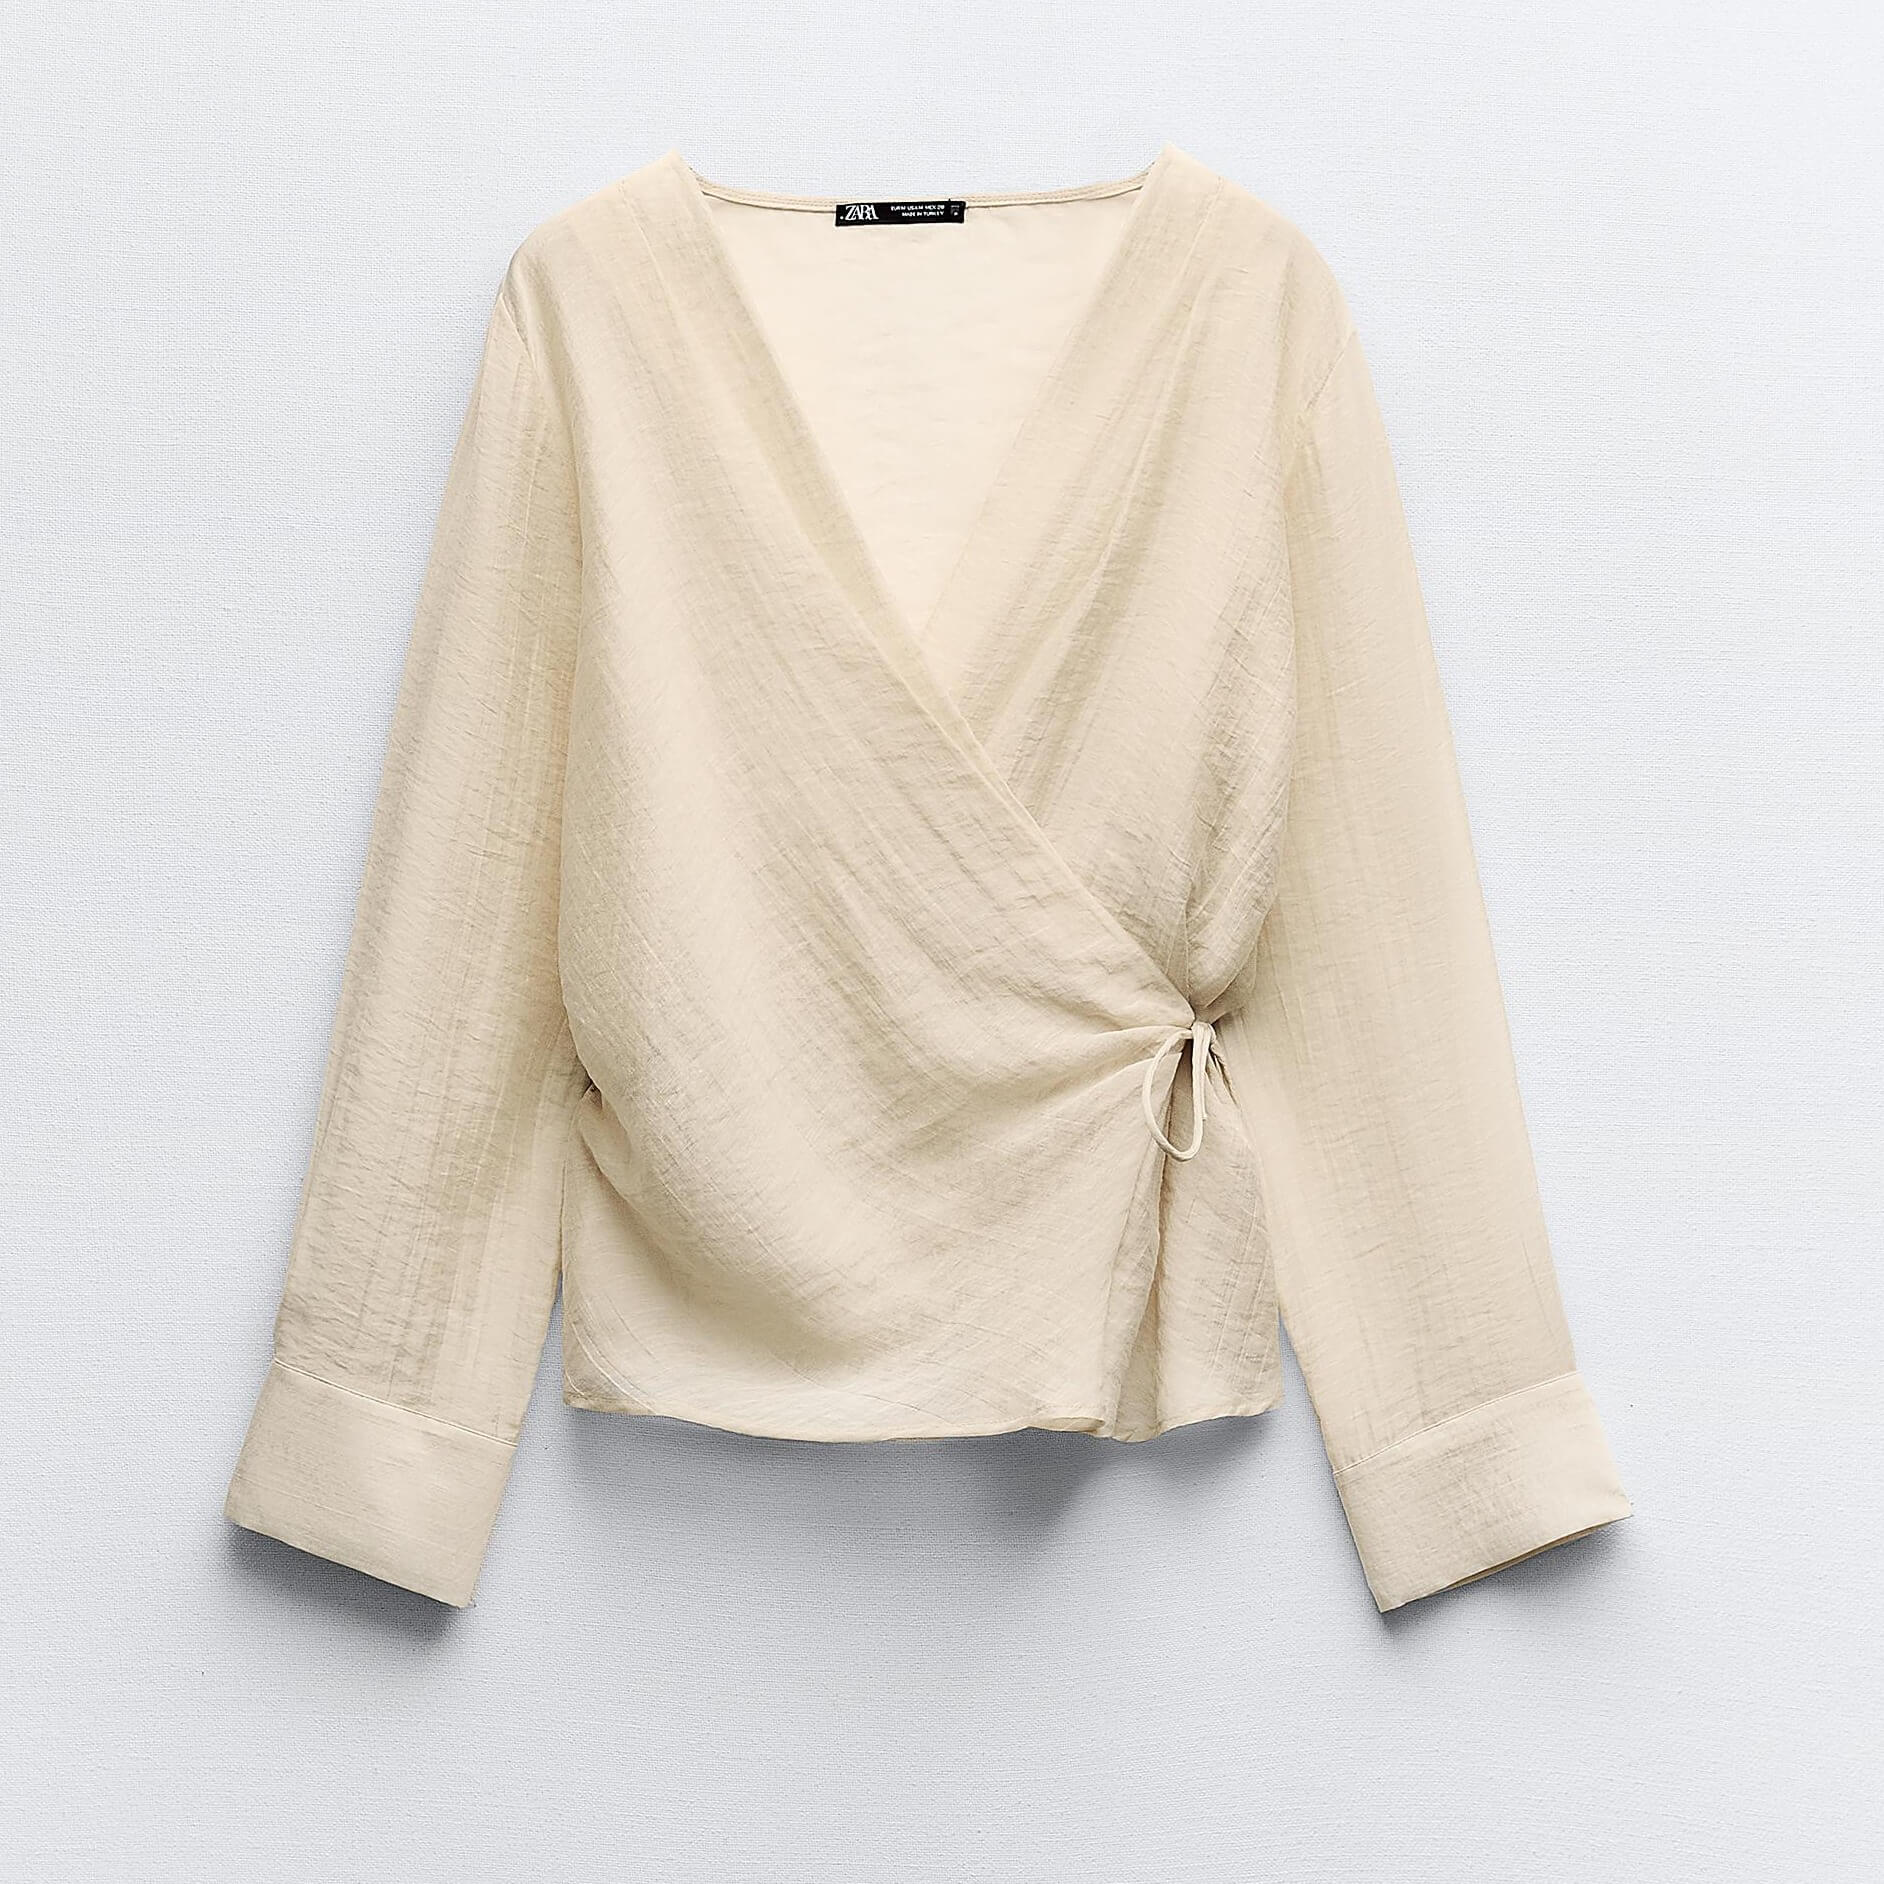 Блузка Zara Semi-sheer Wrap, бежевый женская рубашка с v образным вырезом осенняя блузка из полиэстера с длинными рукавами v образным вырезом и кружевной вставкой